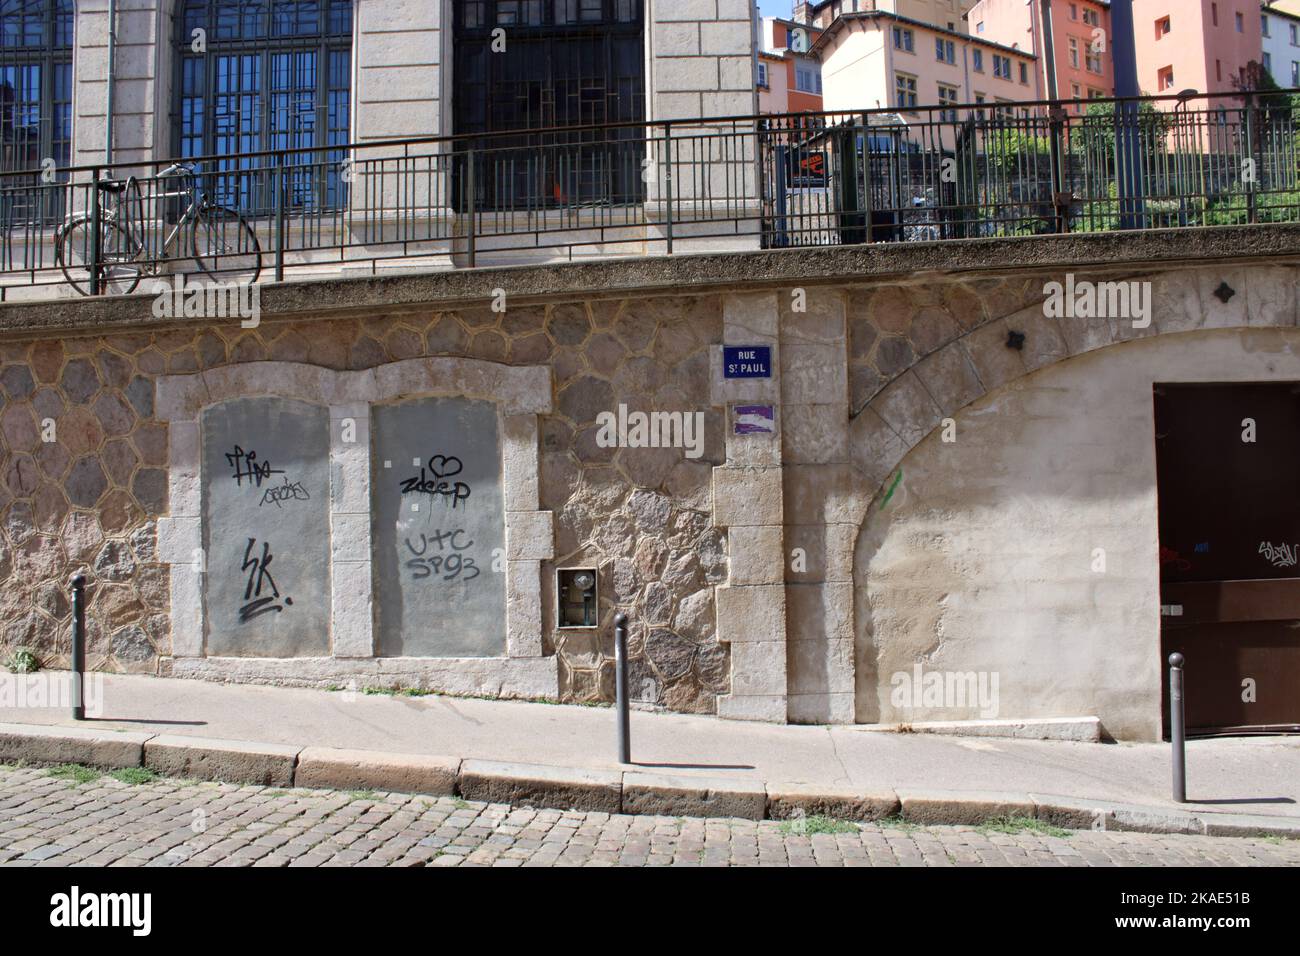 Vue abstraite de la rue St Paul le jour de l'été, situé dans la ville de Lyon France près de la Gare de St Paul. Banque D'Images